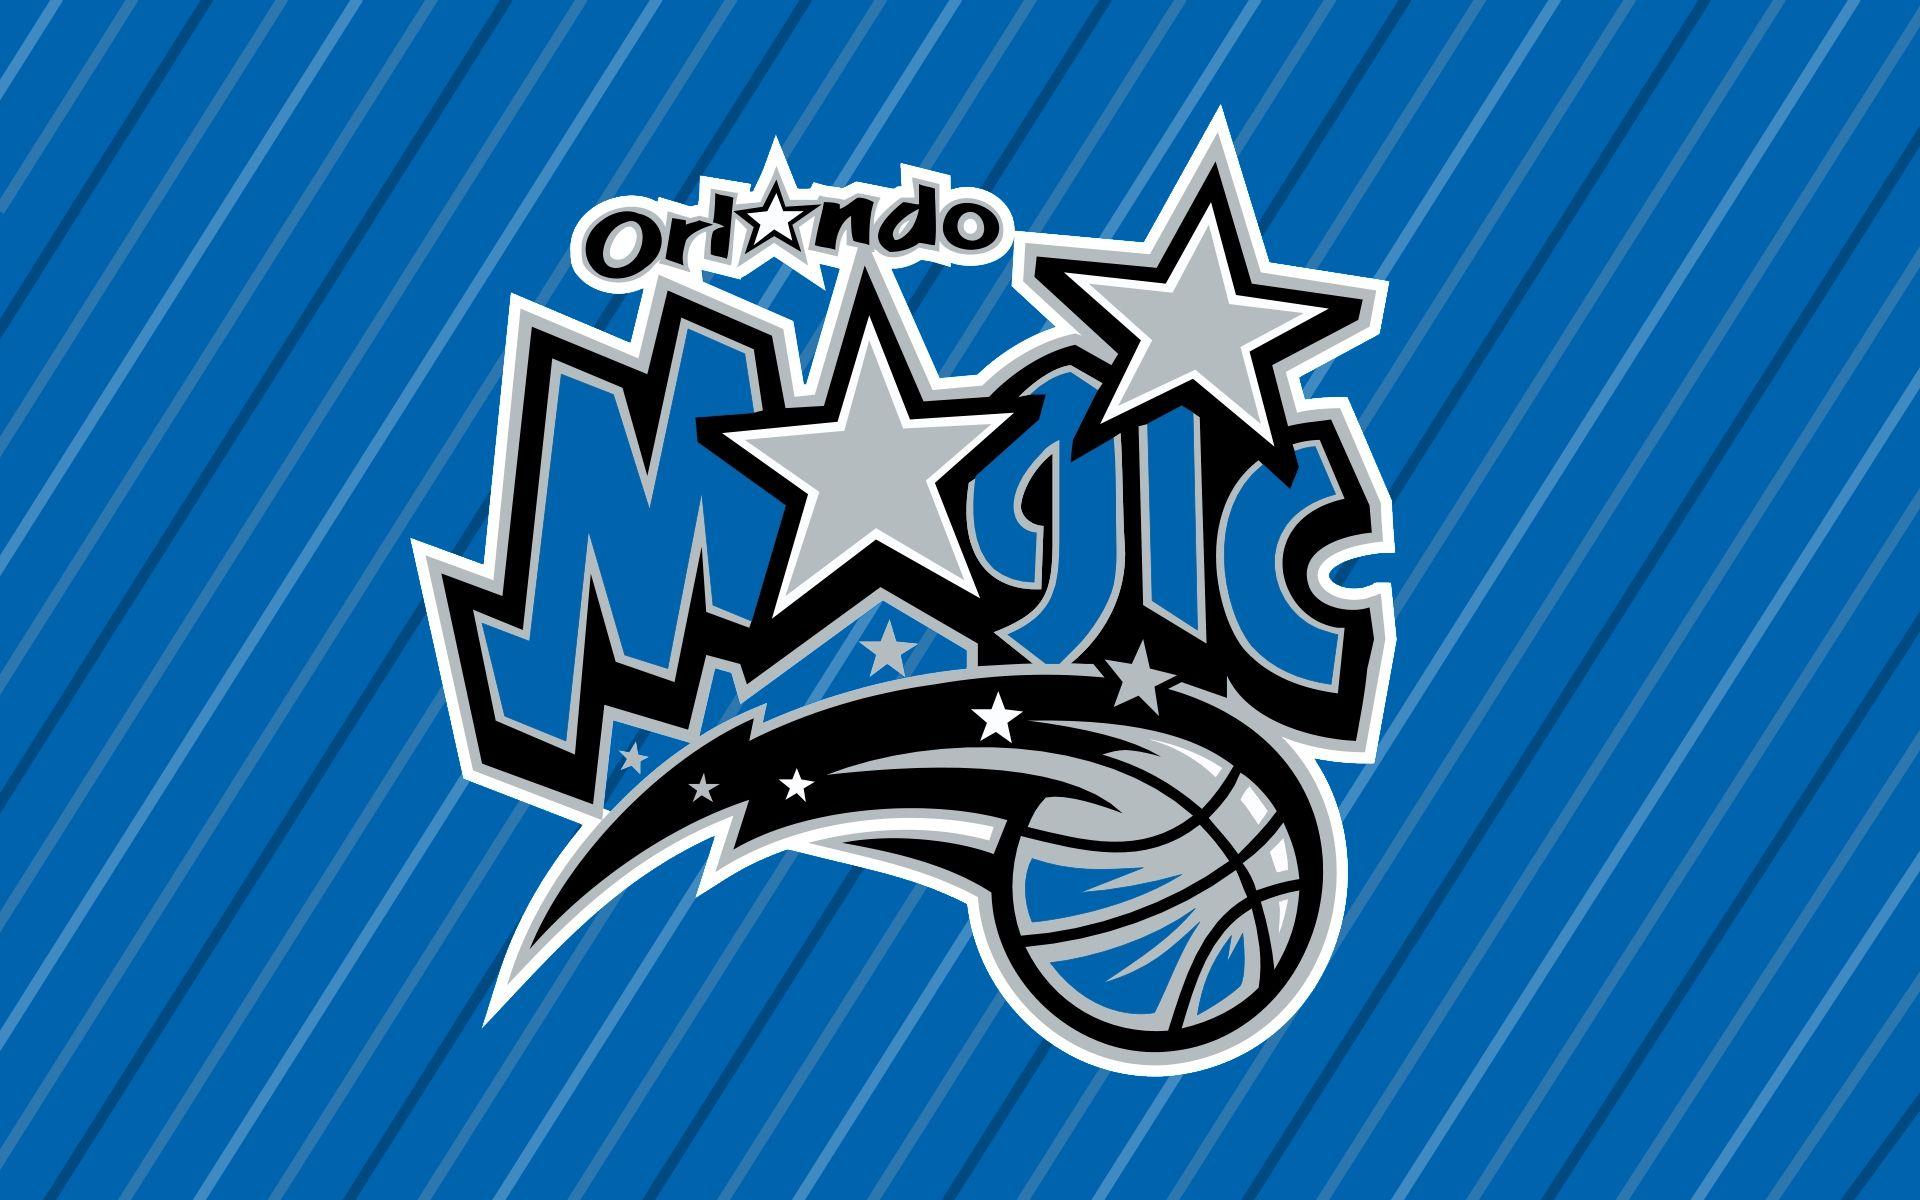 orlando magic logo wallpaper